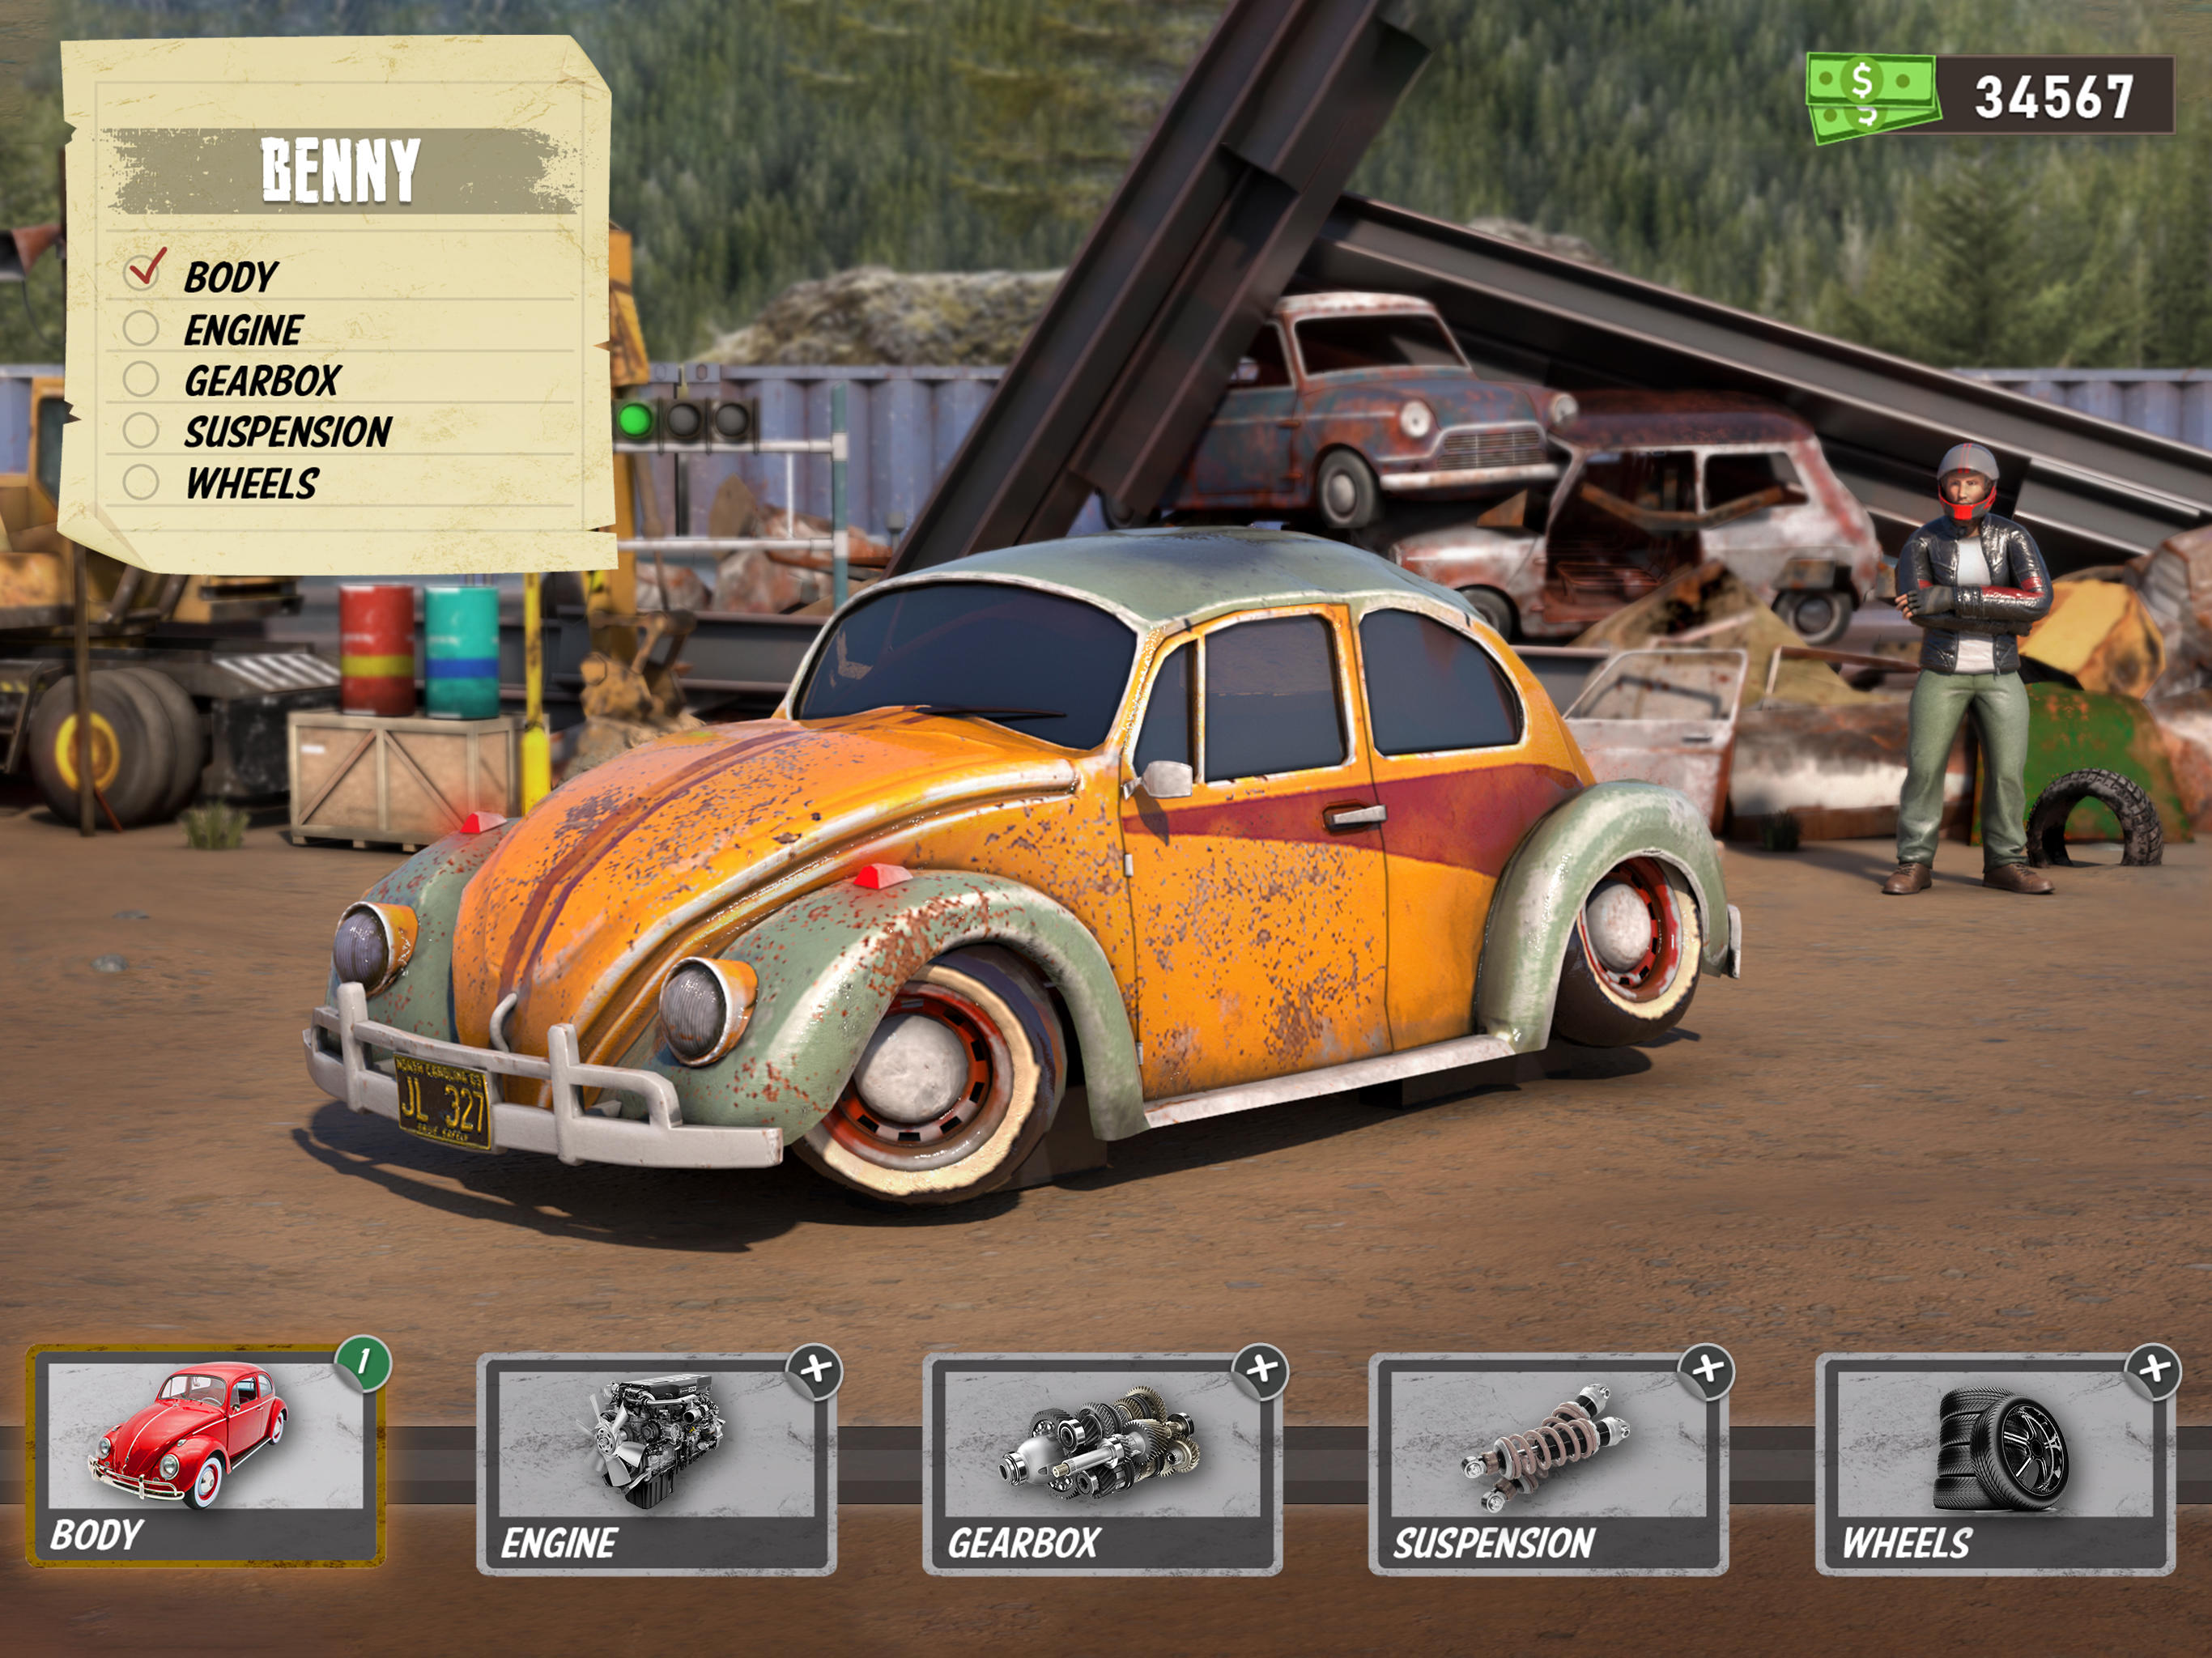 Screenshot of Dirt Track Racing Car Games